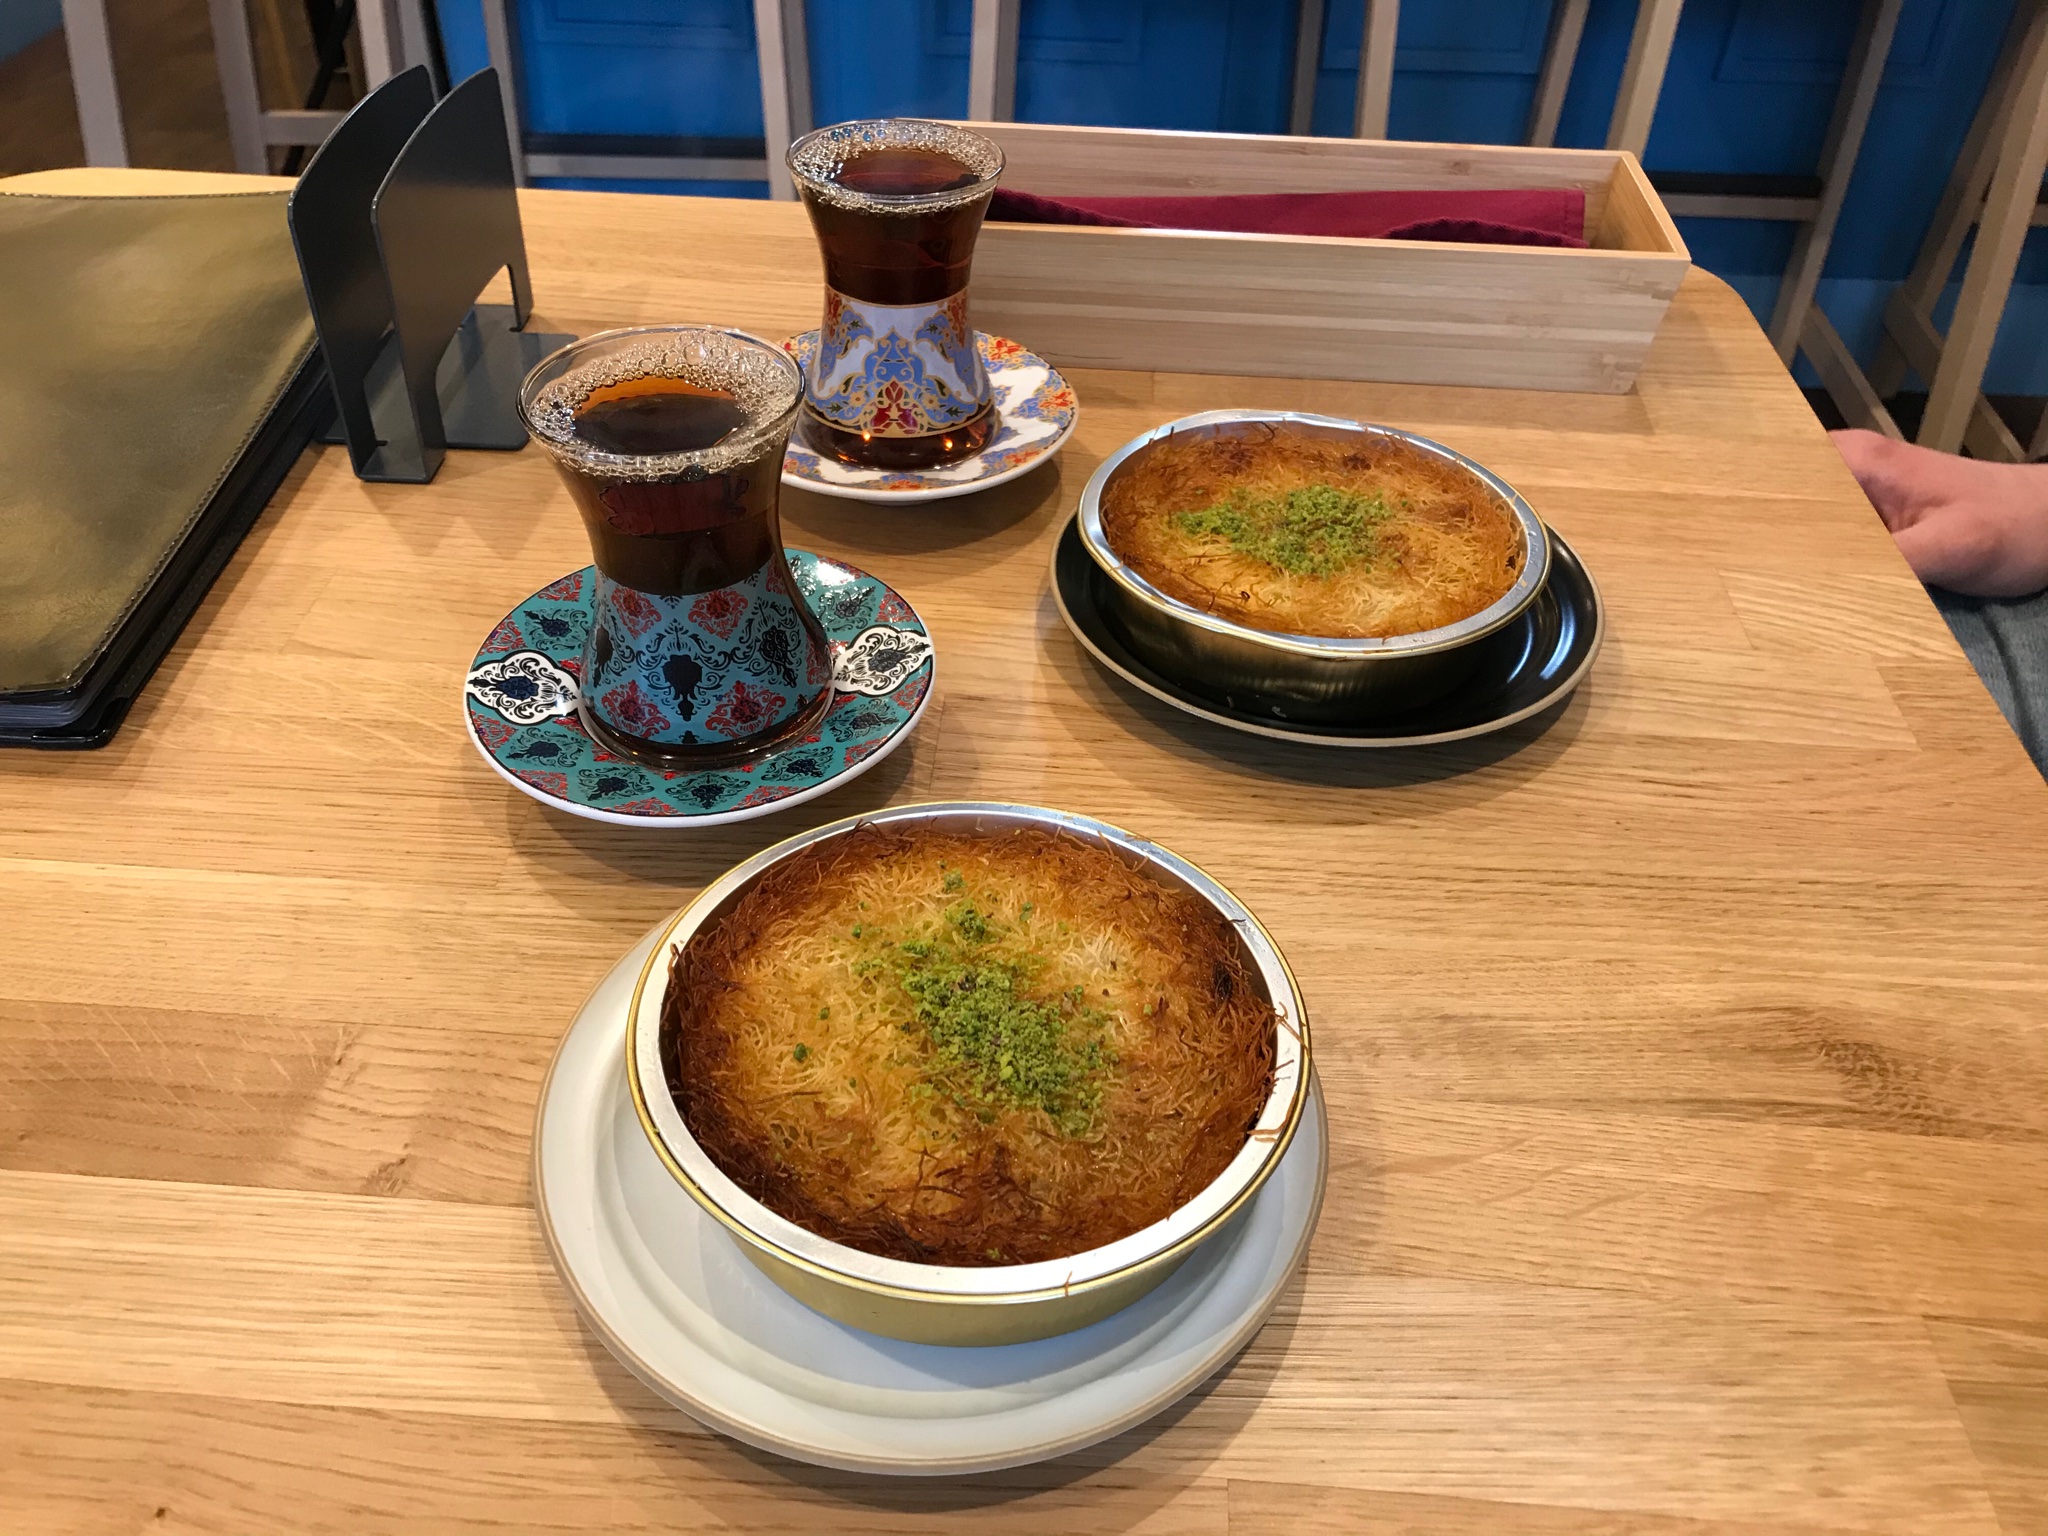 Pasha Kebab 町田駅前通り トルコのデザート キュネフェです 中にはトロトロのモッツァレラチーズが入っています T Co Ddmtadc9zy Twitter